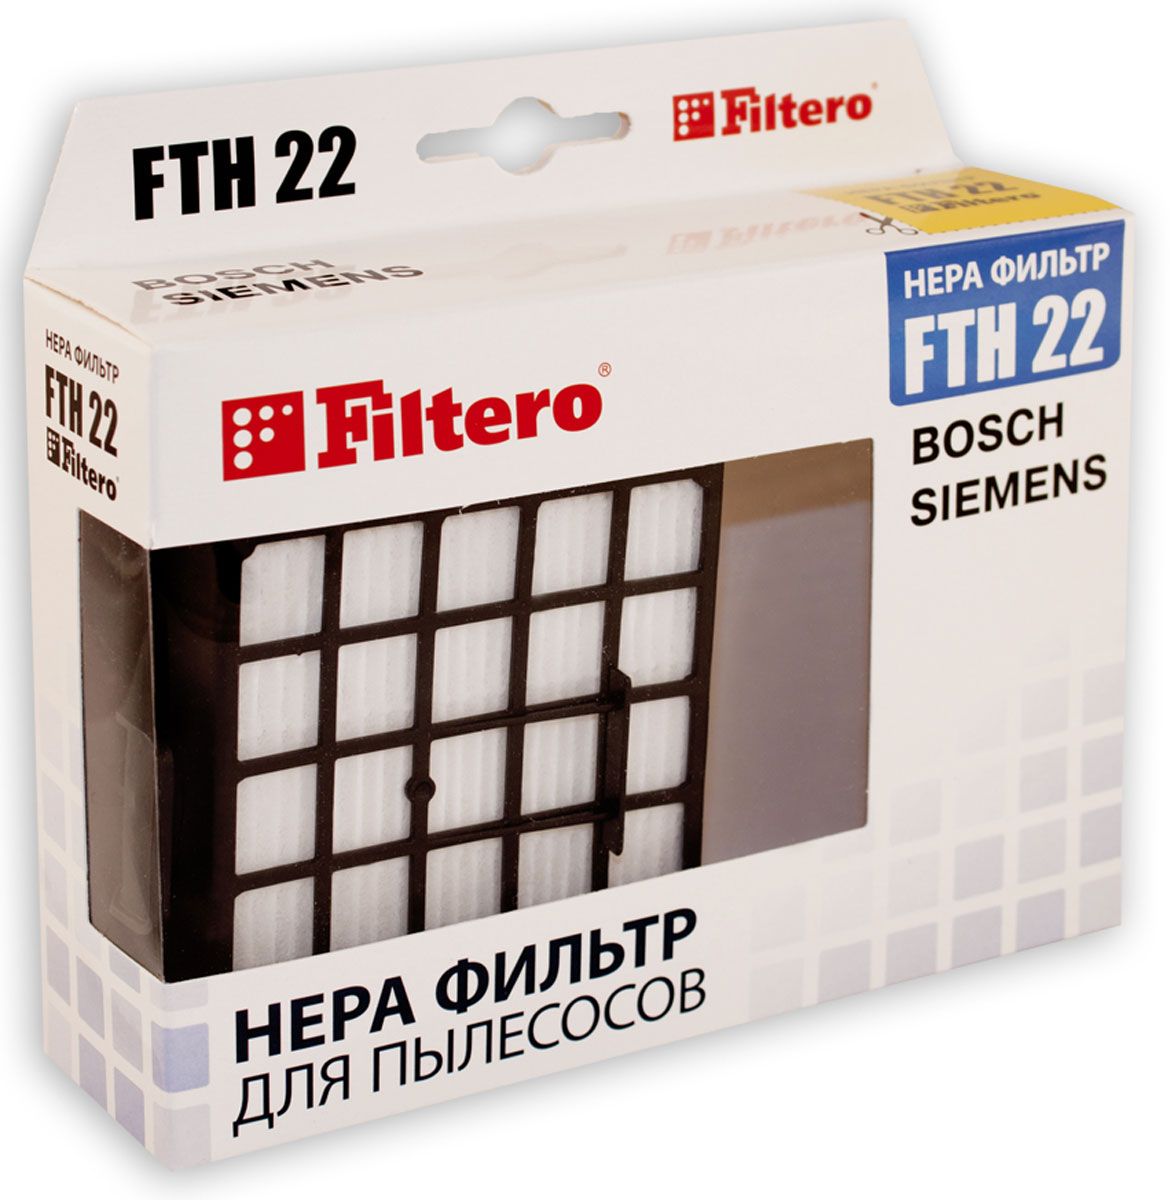 НЕРА-фильтр Filtero FTH 22 (1фильт.)